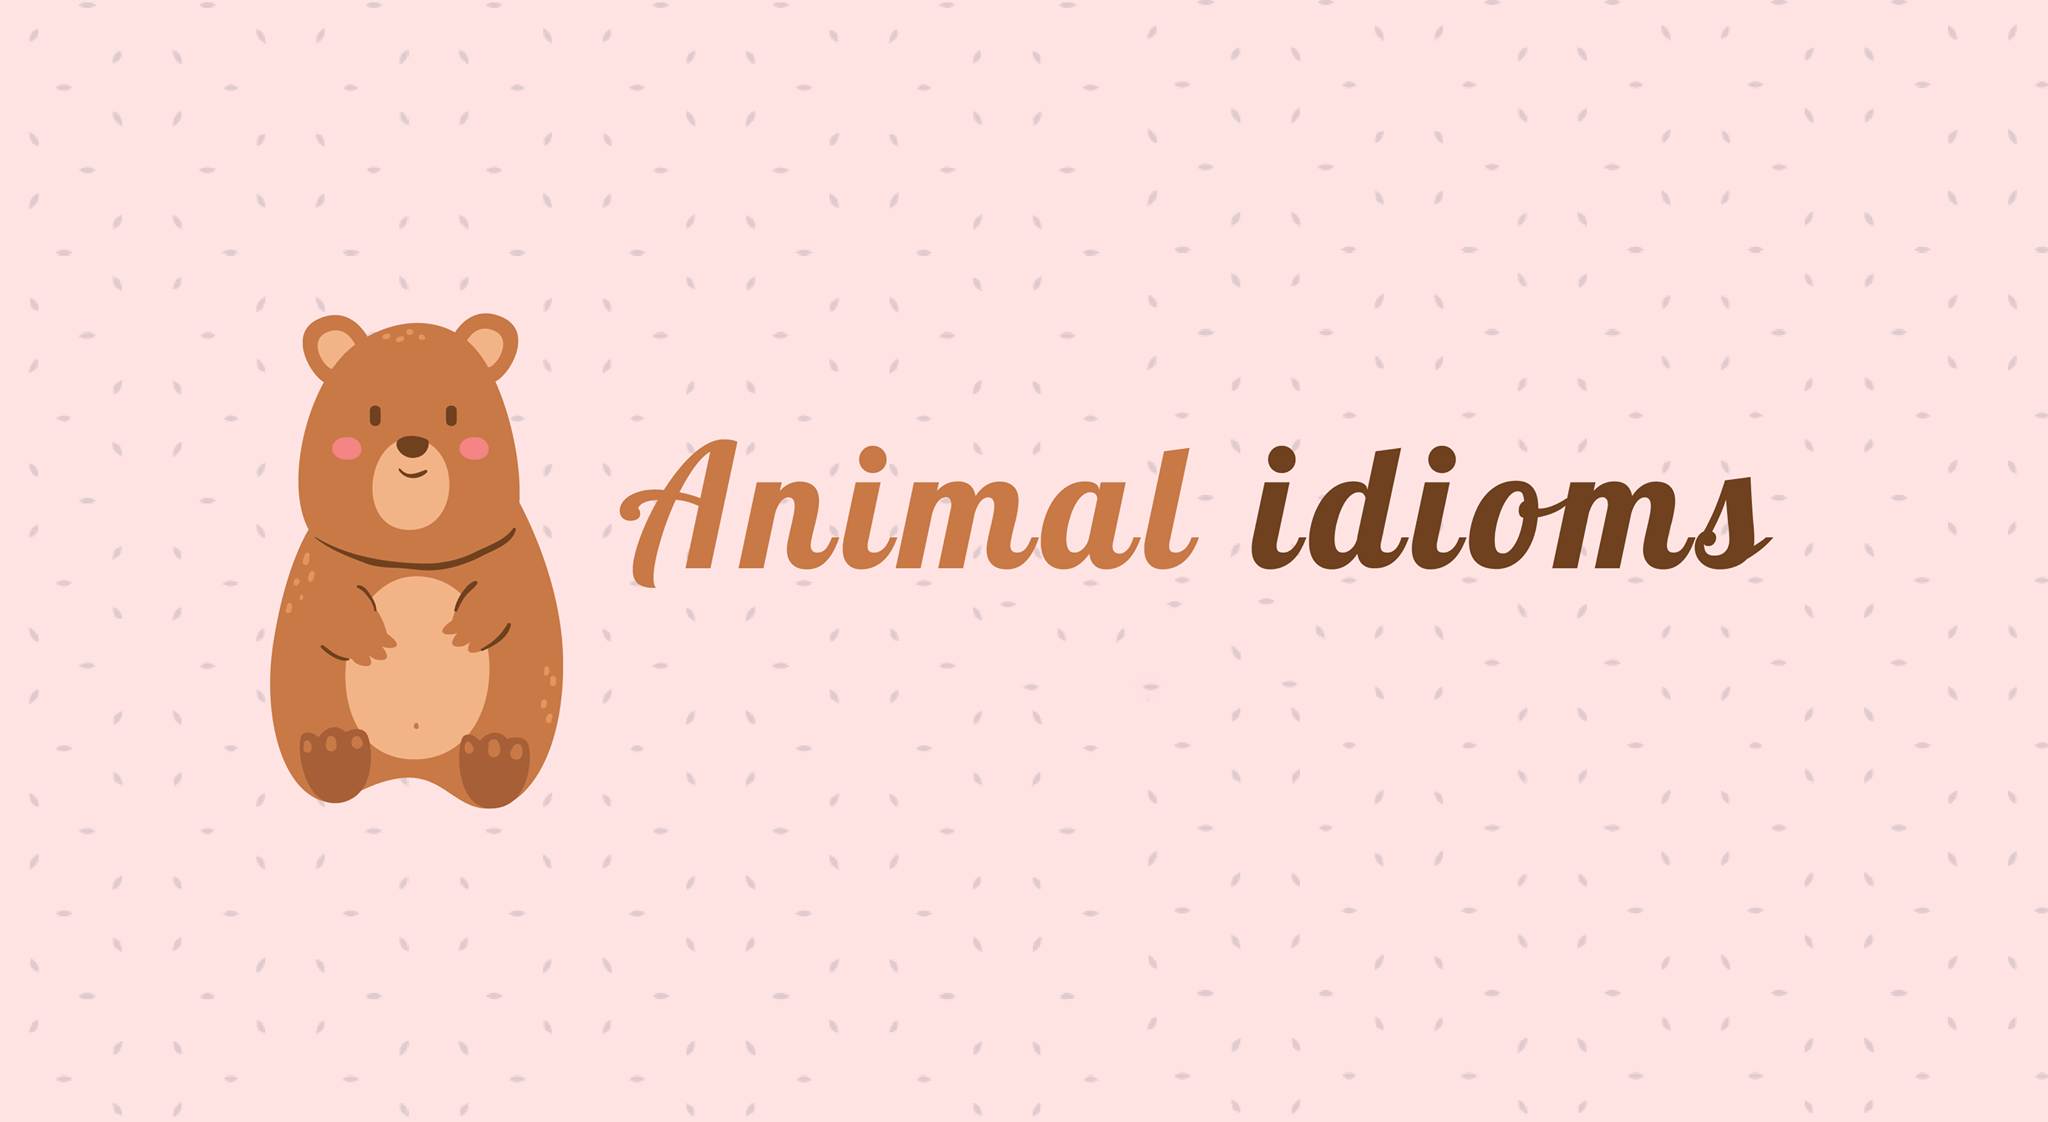 Animals (Idioms với động vật) - Đôi nét về Idioms hay theo chủ đề